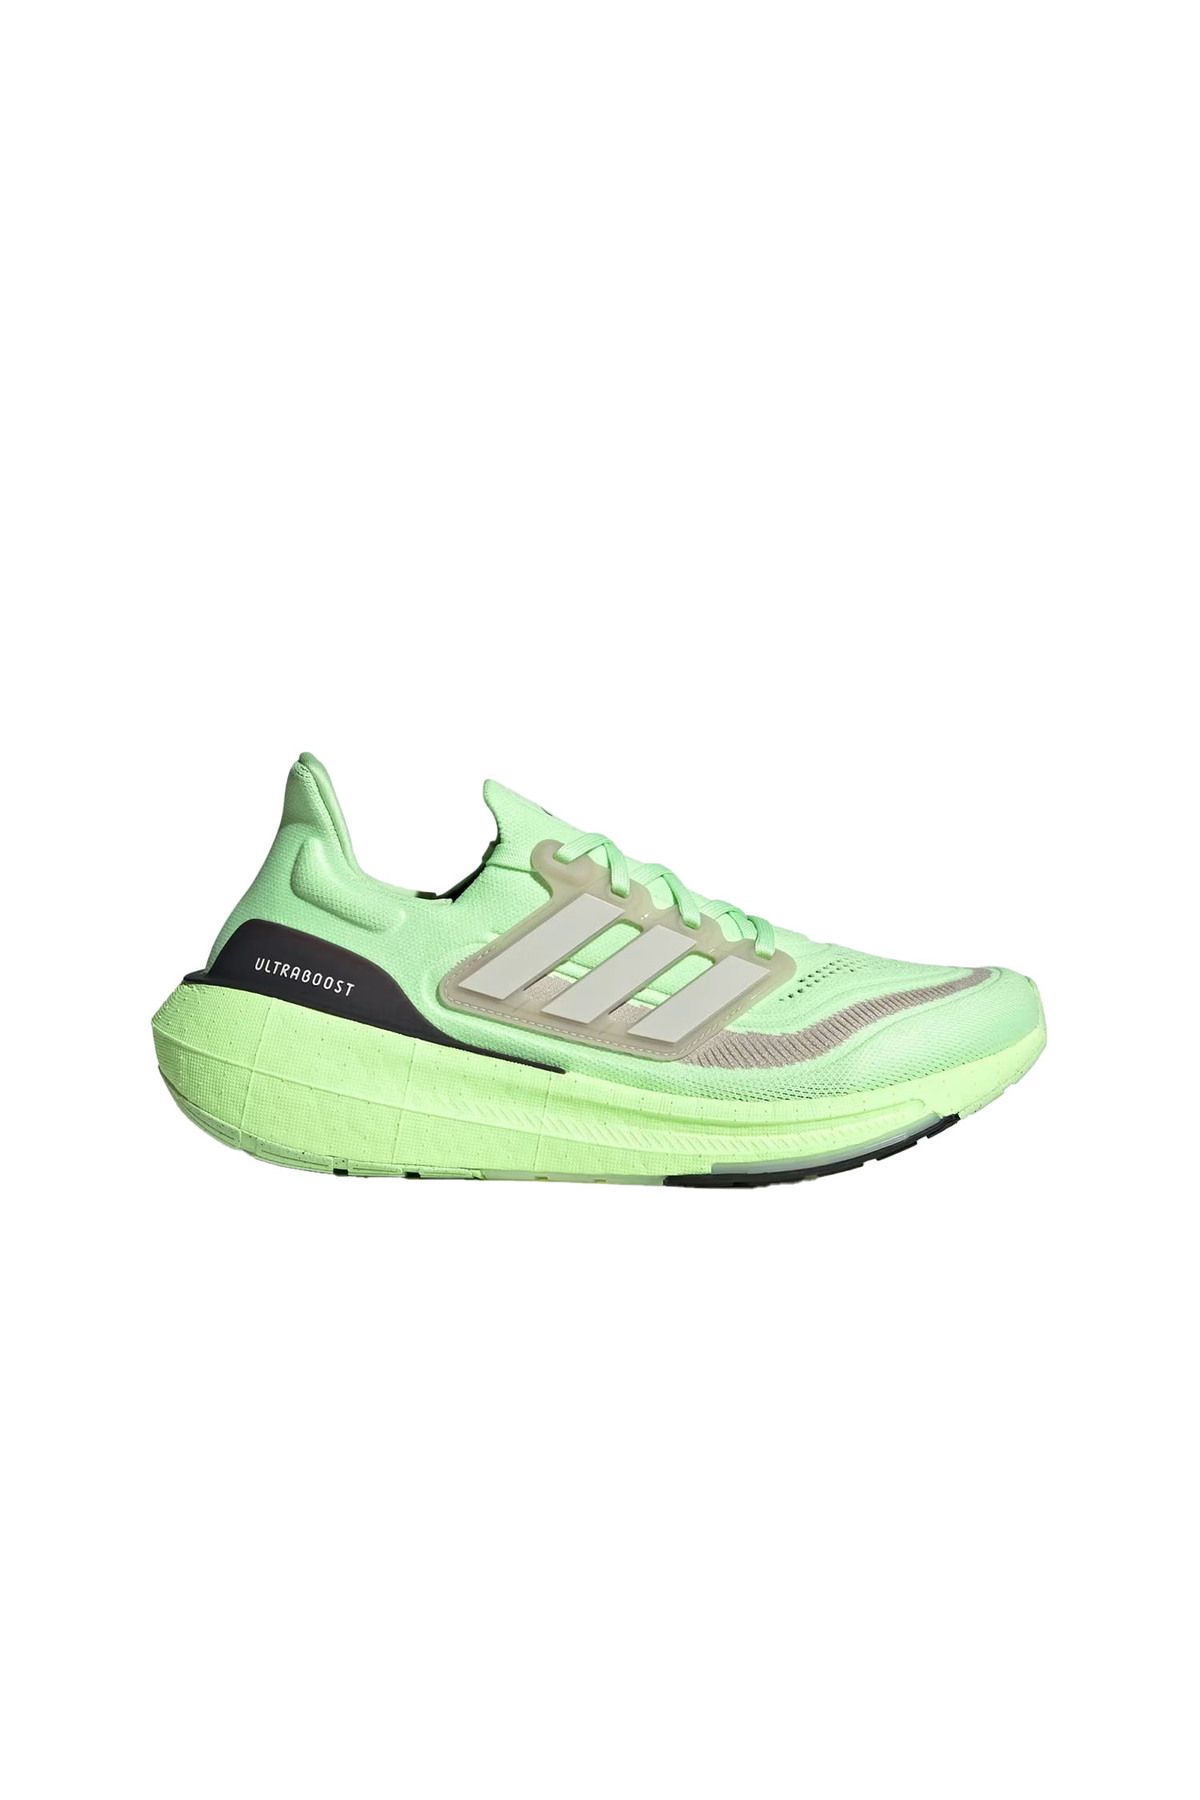 adidas Ultraboost Light Yol Koşu Ayakkabısı